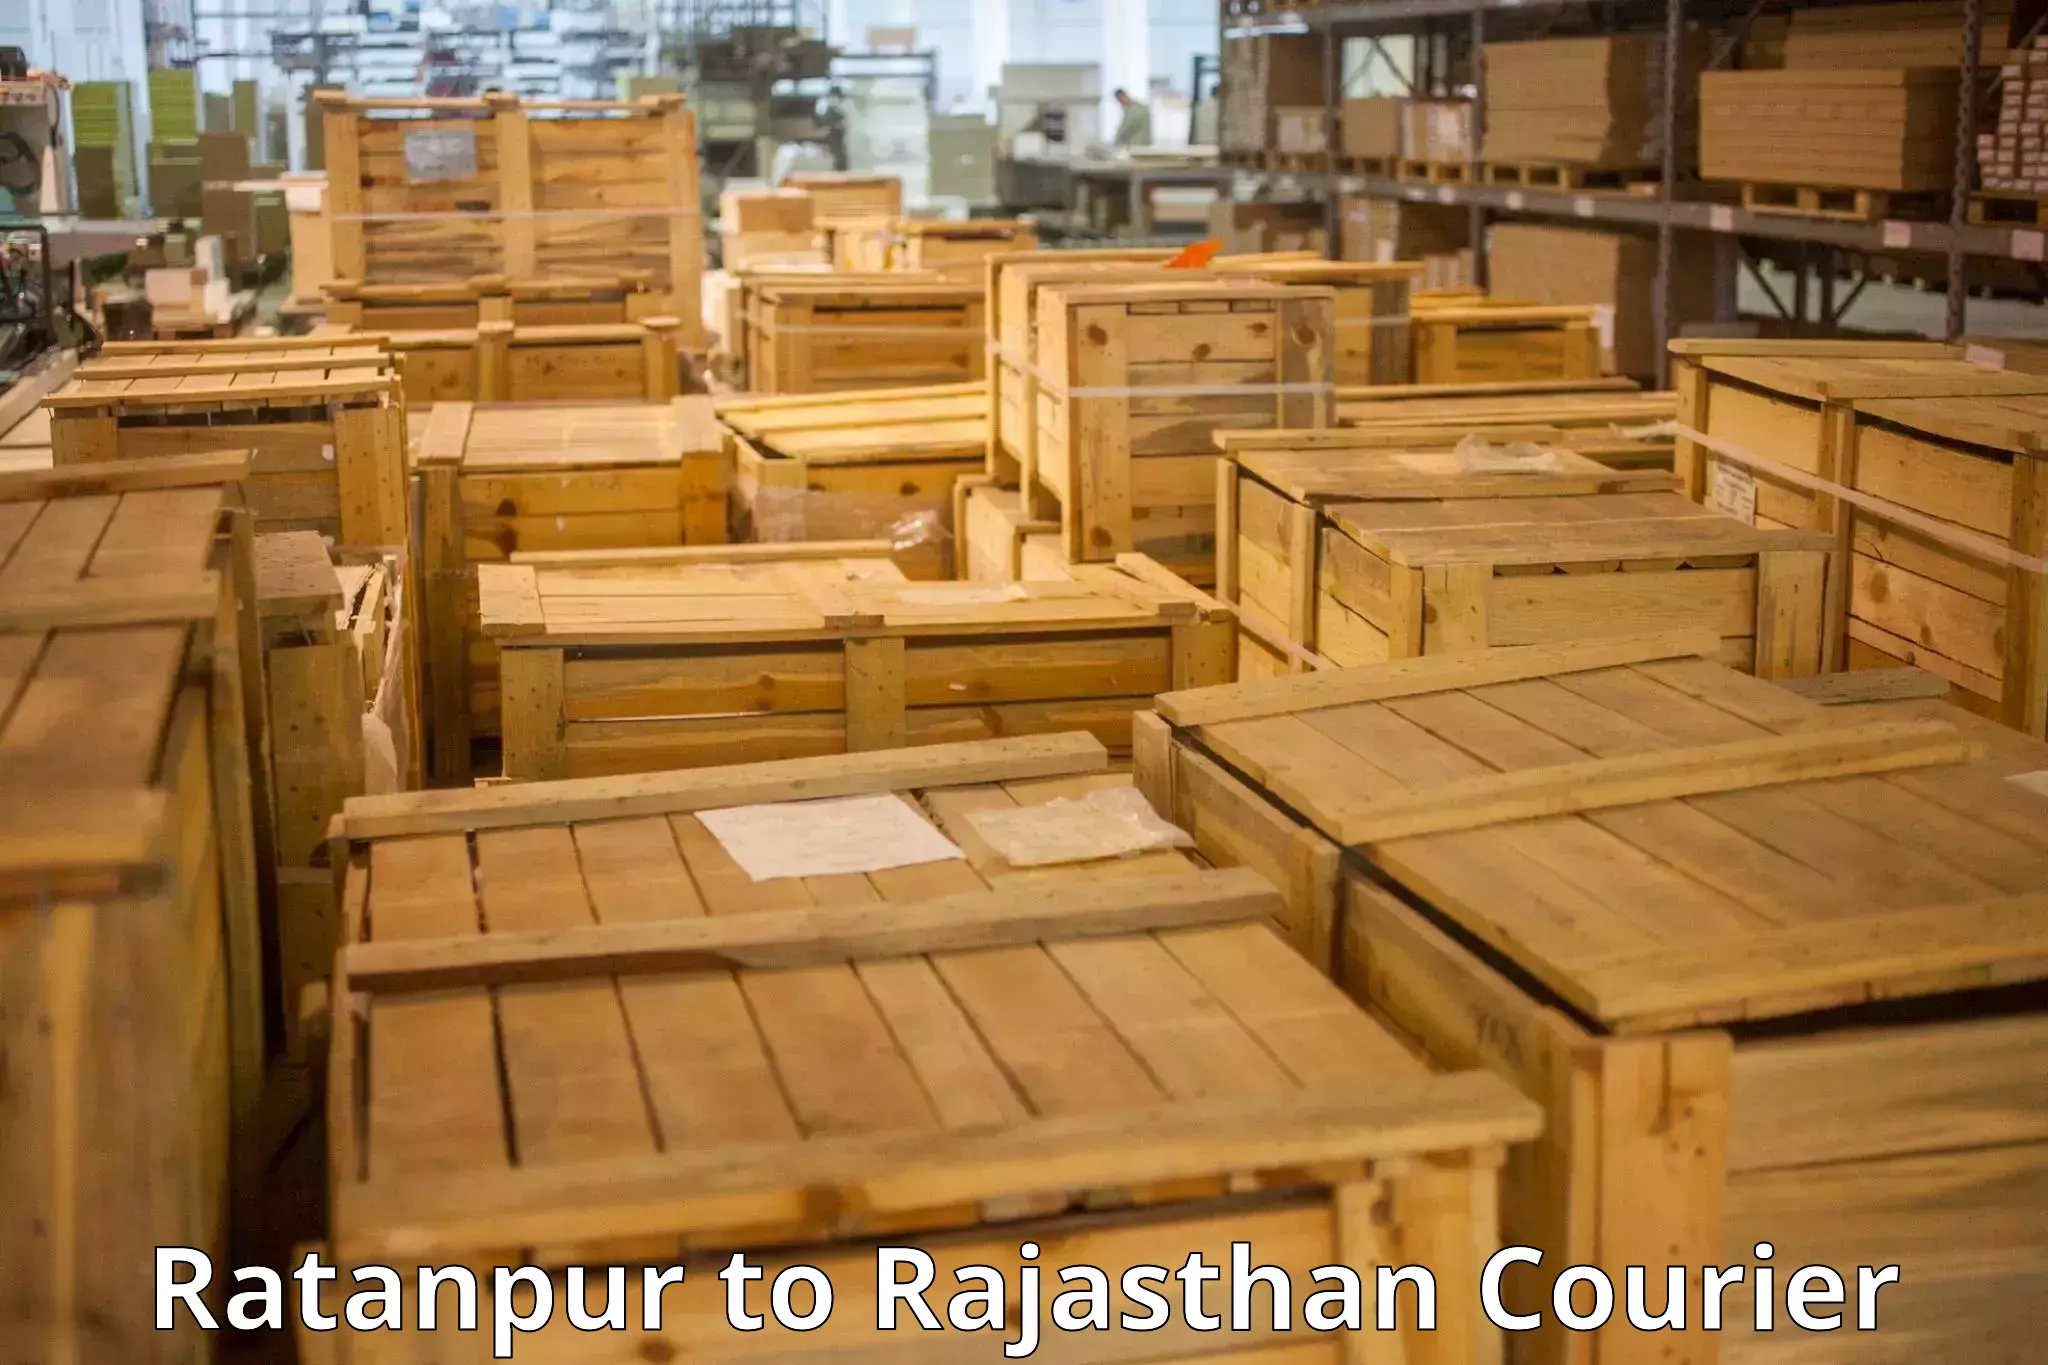 Baggage transport scheduler Ratanpur to Rajasthan